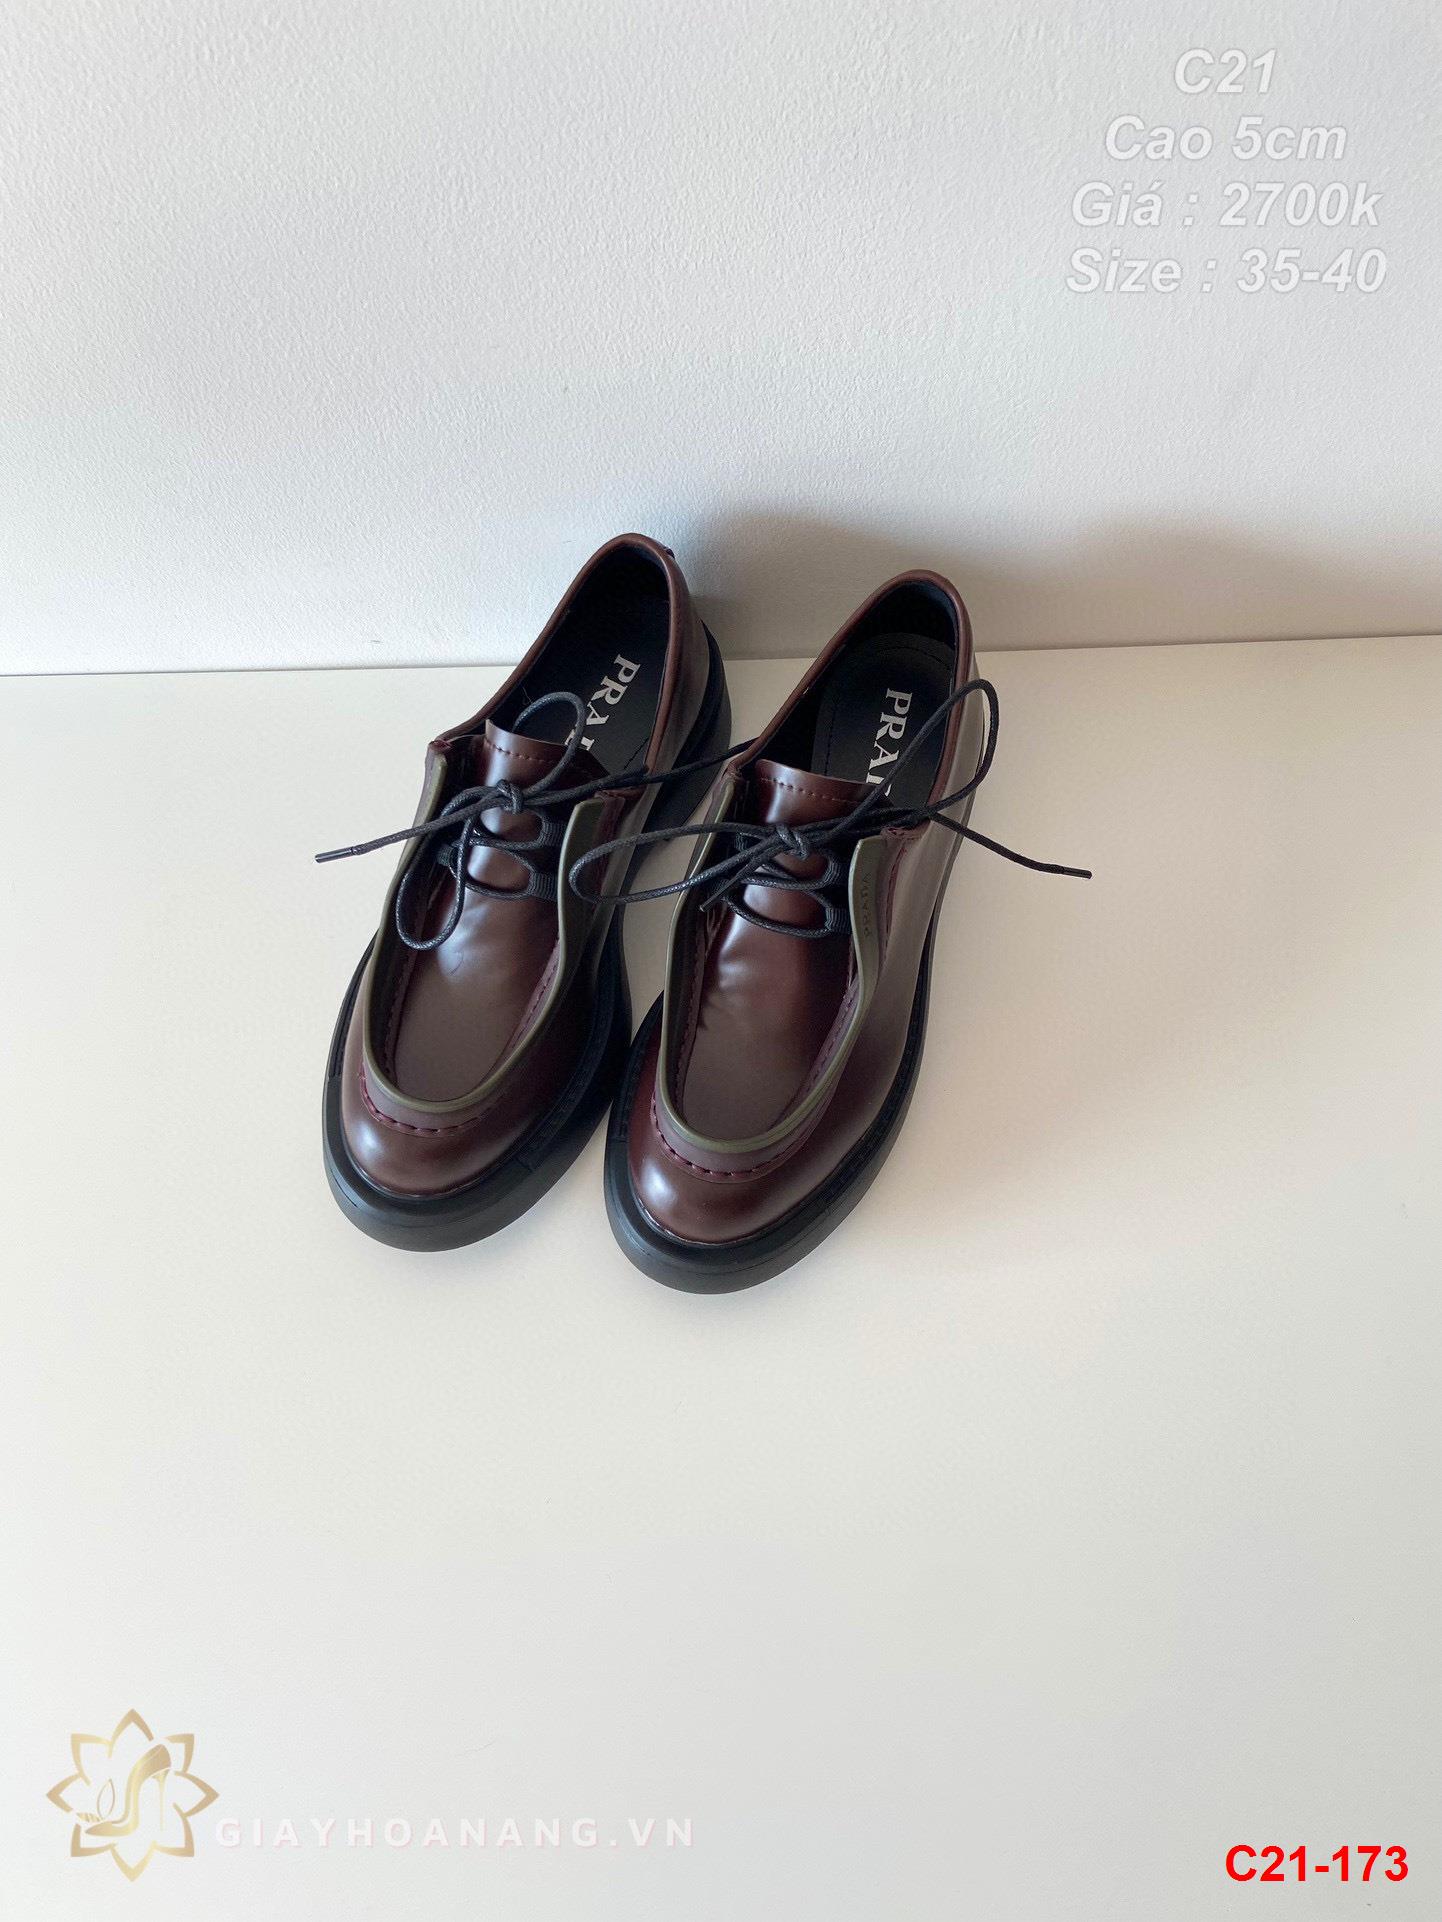 C21-173 Prada giày thể thao cao 5cm siêu cấp